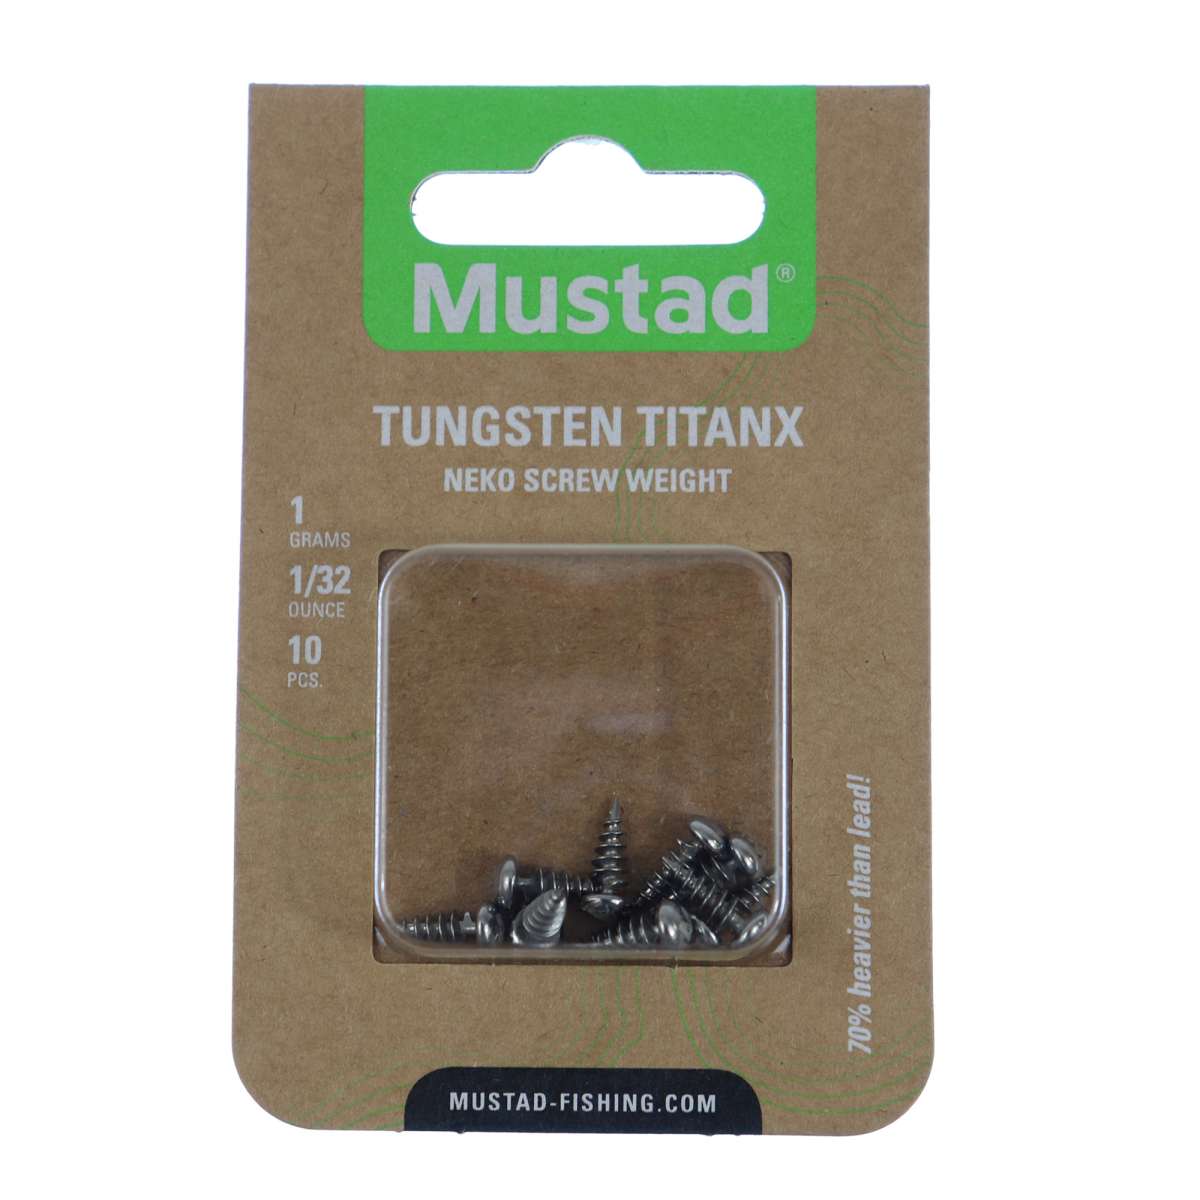 Mustad Tungsten TitanX Neko Screw Weights